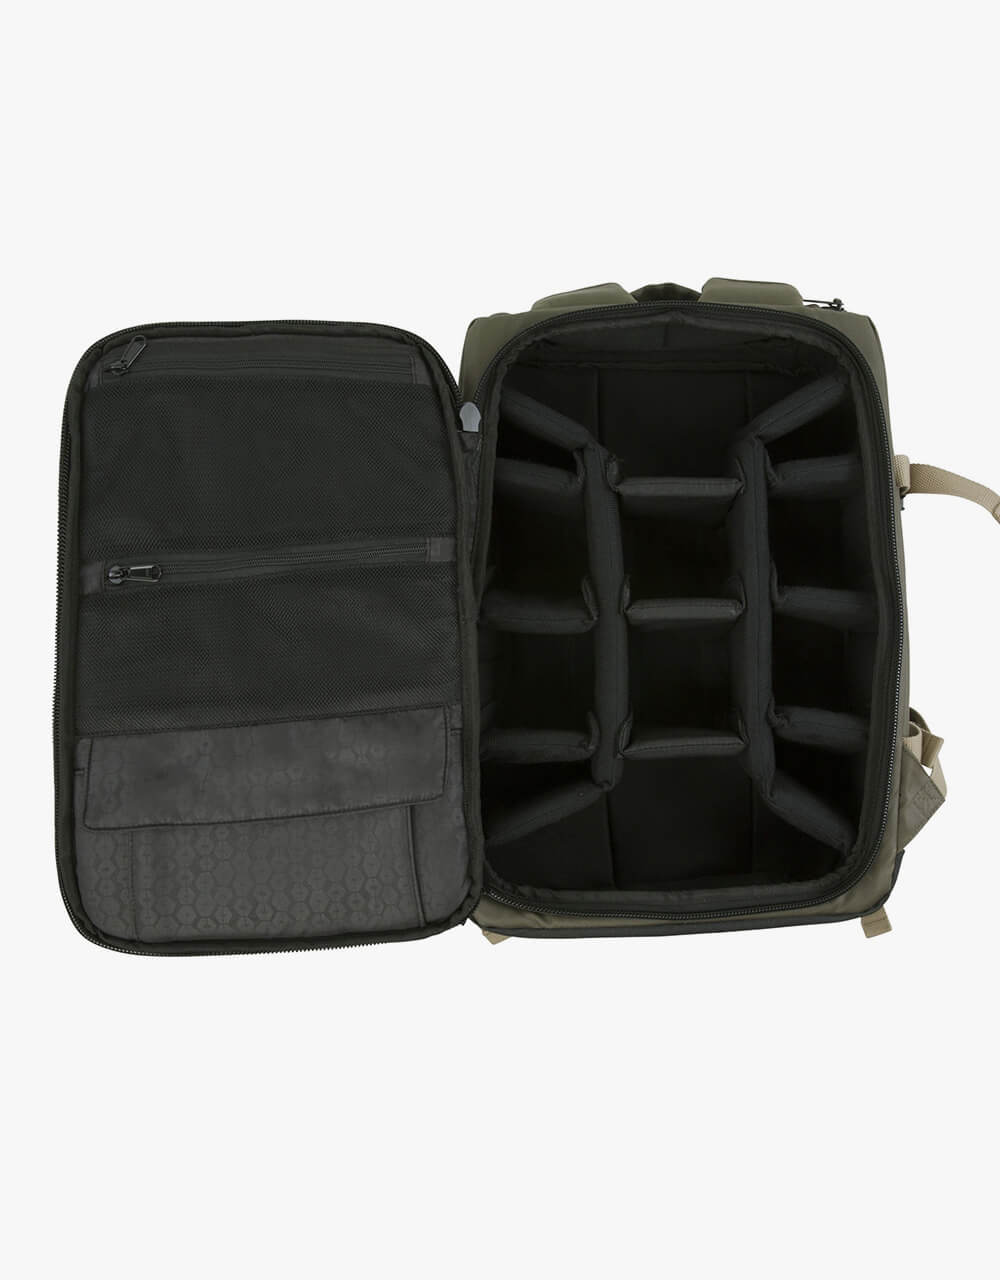 HEX Grid Medium DSLR Camera Backpack - Olive